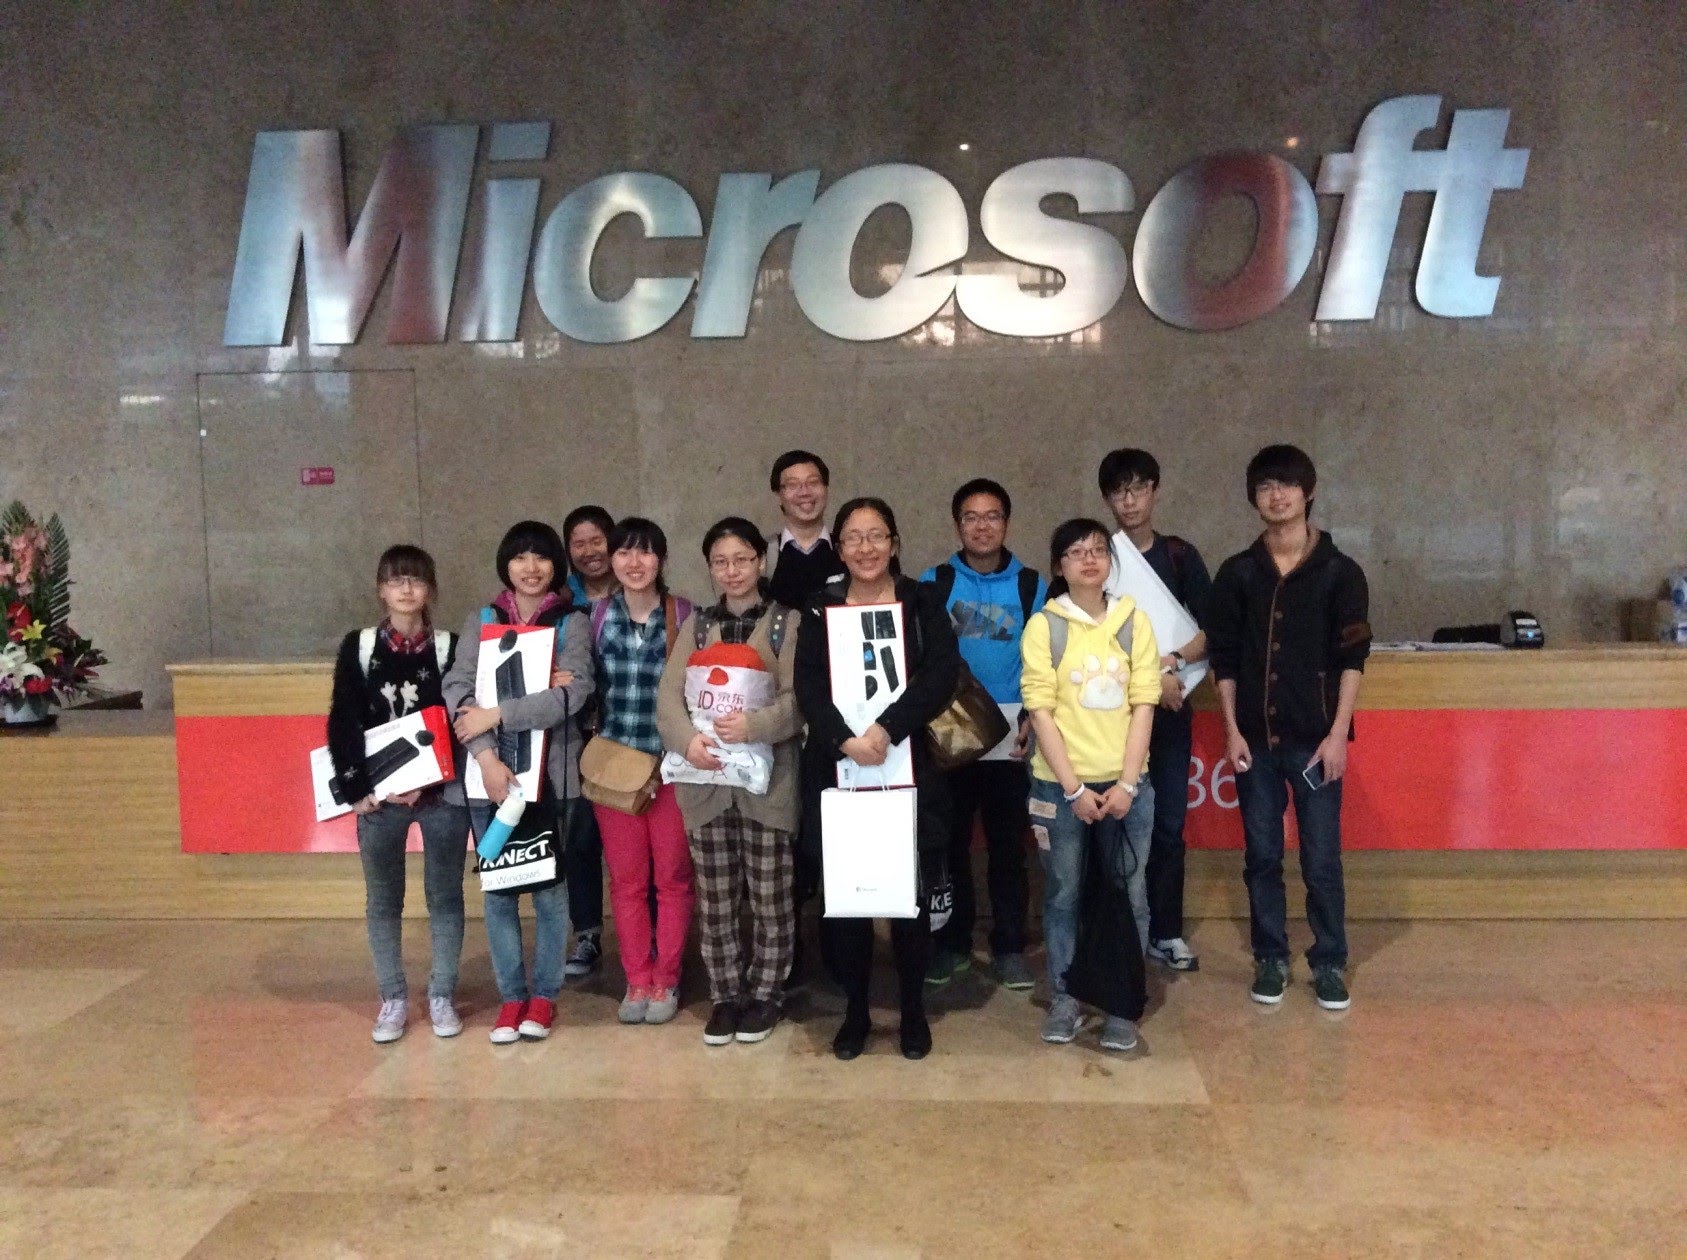 All students posing photos at Microsoft